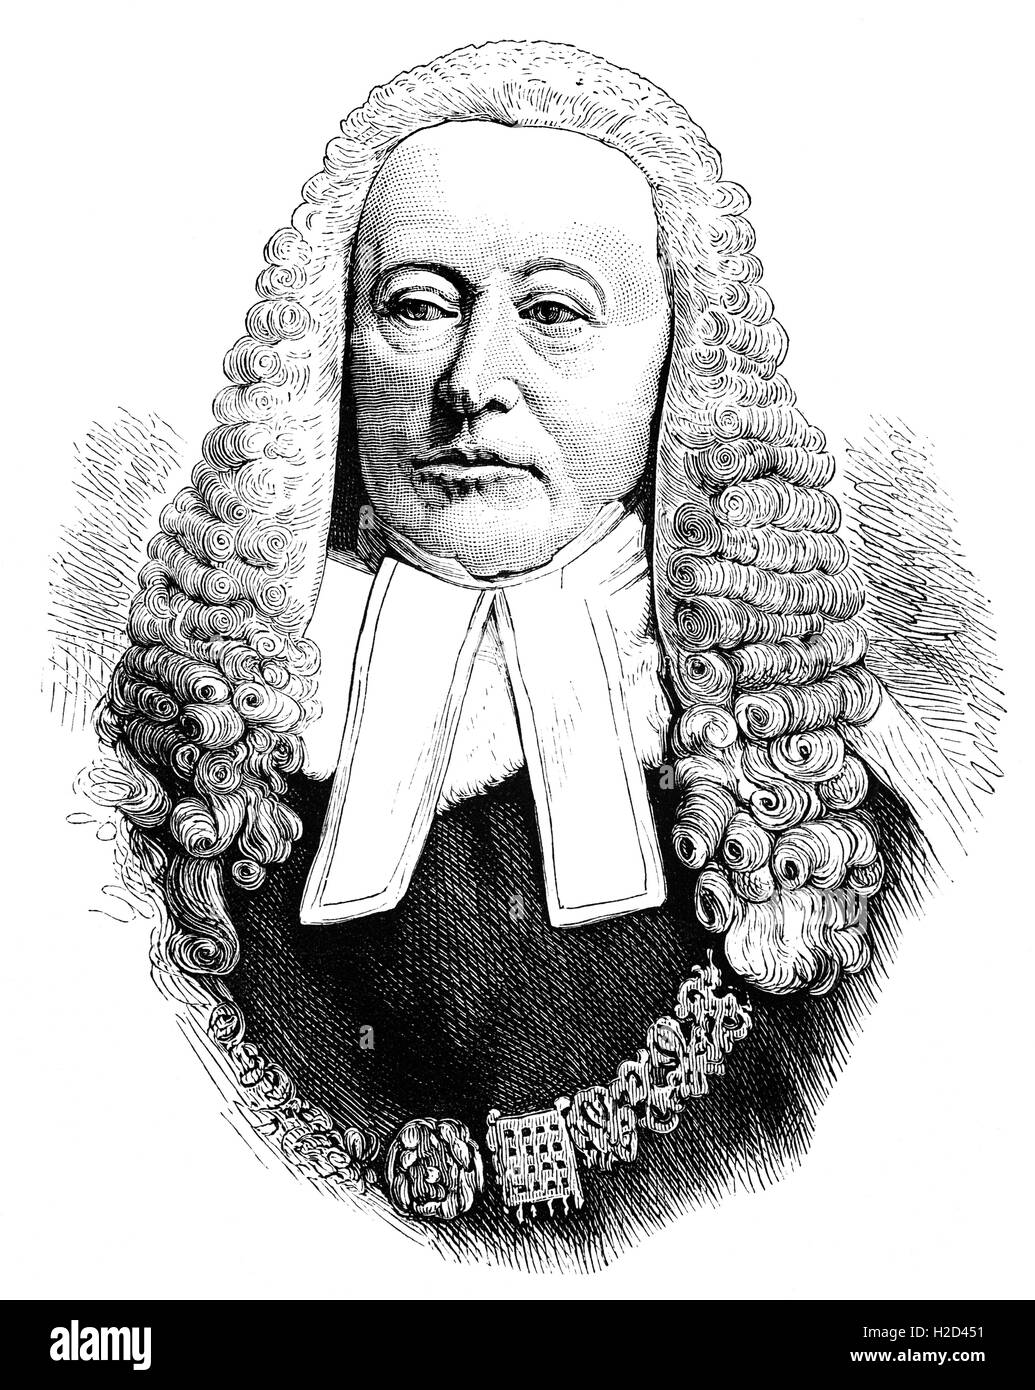 Sir Alexander James Edmund Cockburn (1802 – 1880) war ein schottischer Jurist und Politiker, als der Lord Chief Justice 21 Jahre Vorstand. Ein notorischer Frauenheld und Prominente, hörte er einige der führenden Ursachen Célèbres des neunzehnten Jahrhunderts. Stockfoto